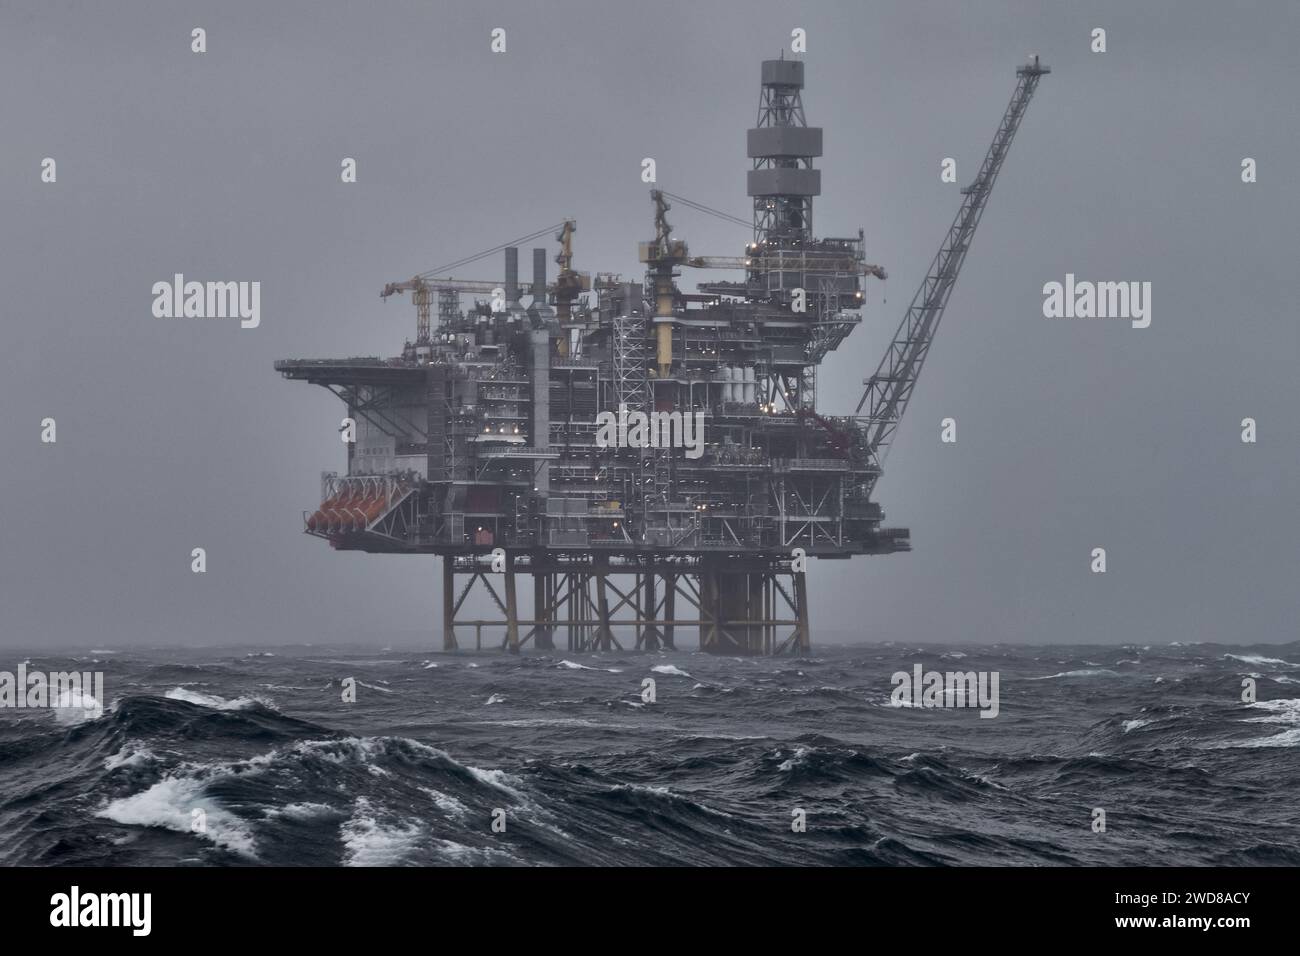 Plate-forme pétrolière et gazière offshore en mer, pendant la tempête, avec ciel gris et vagues au premier plan. Banque D'Images